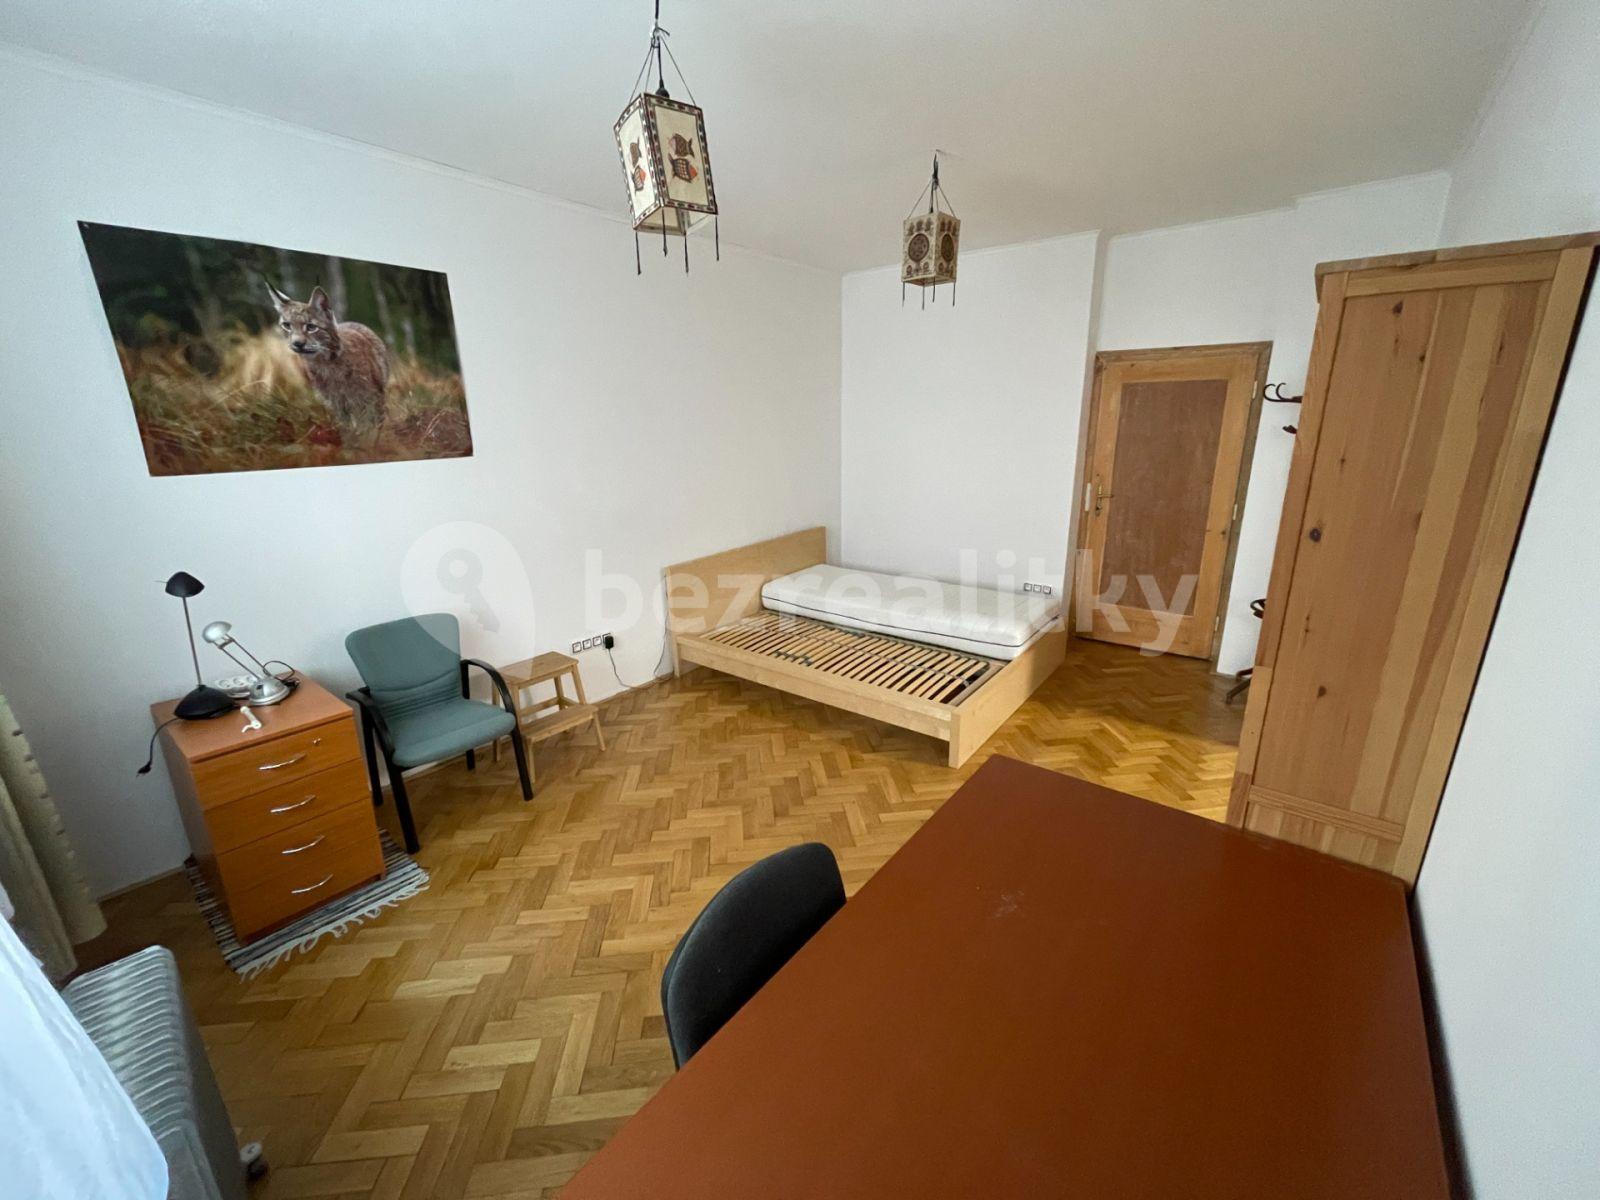 1 bedroom with open-plan kitchen flat to rent, 50 m², Rybářská, Brno, Jihomoravský Region